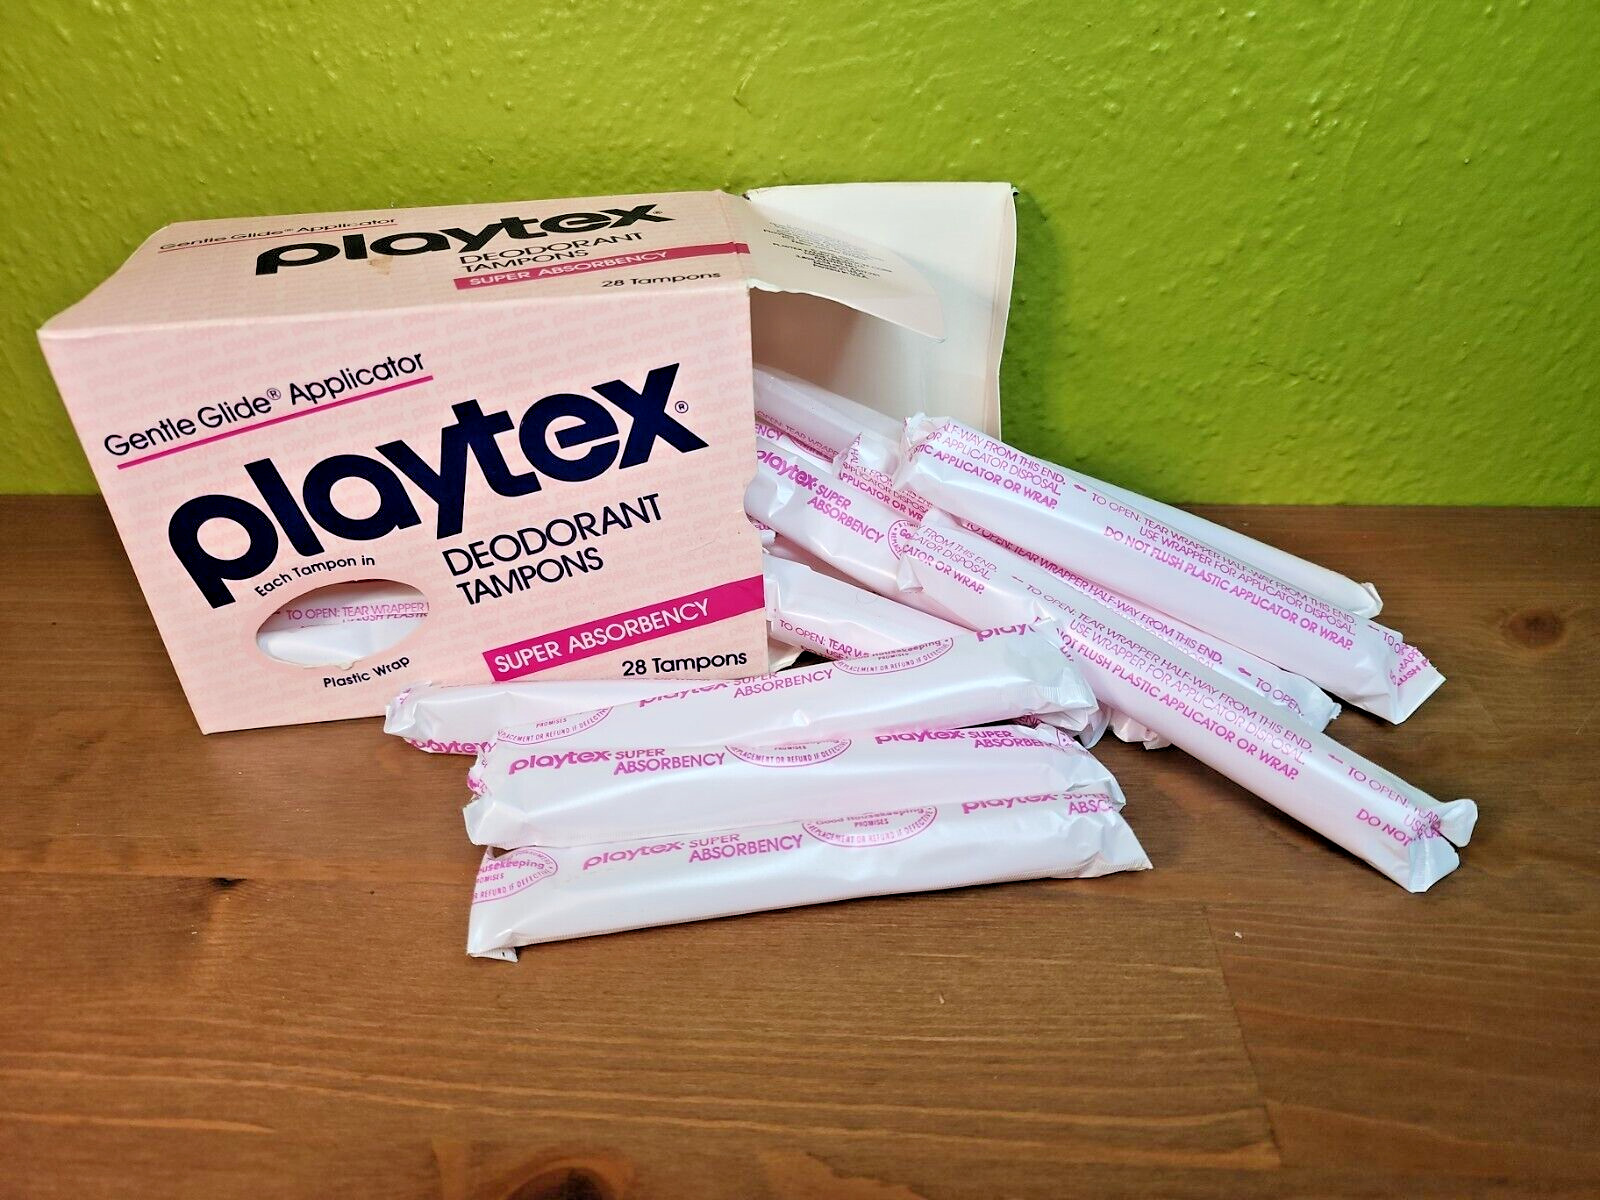 Vtg 1980s Playtex Deodorant Tampons Super Absorbency Gentle Glide Pink Box PROP